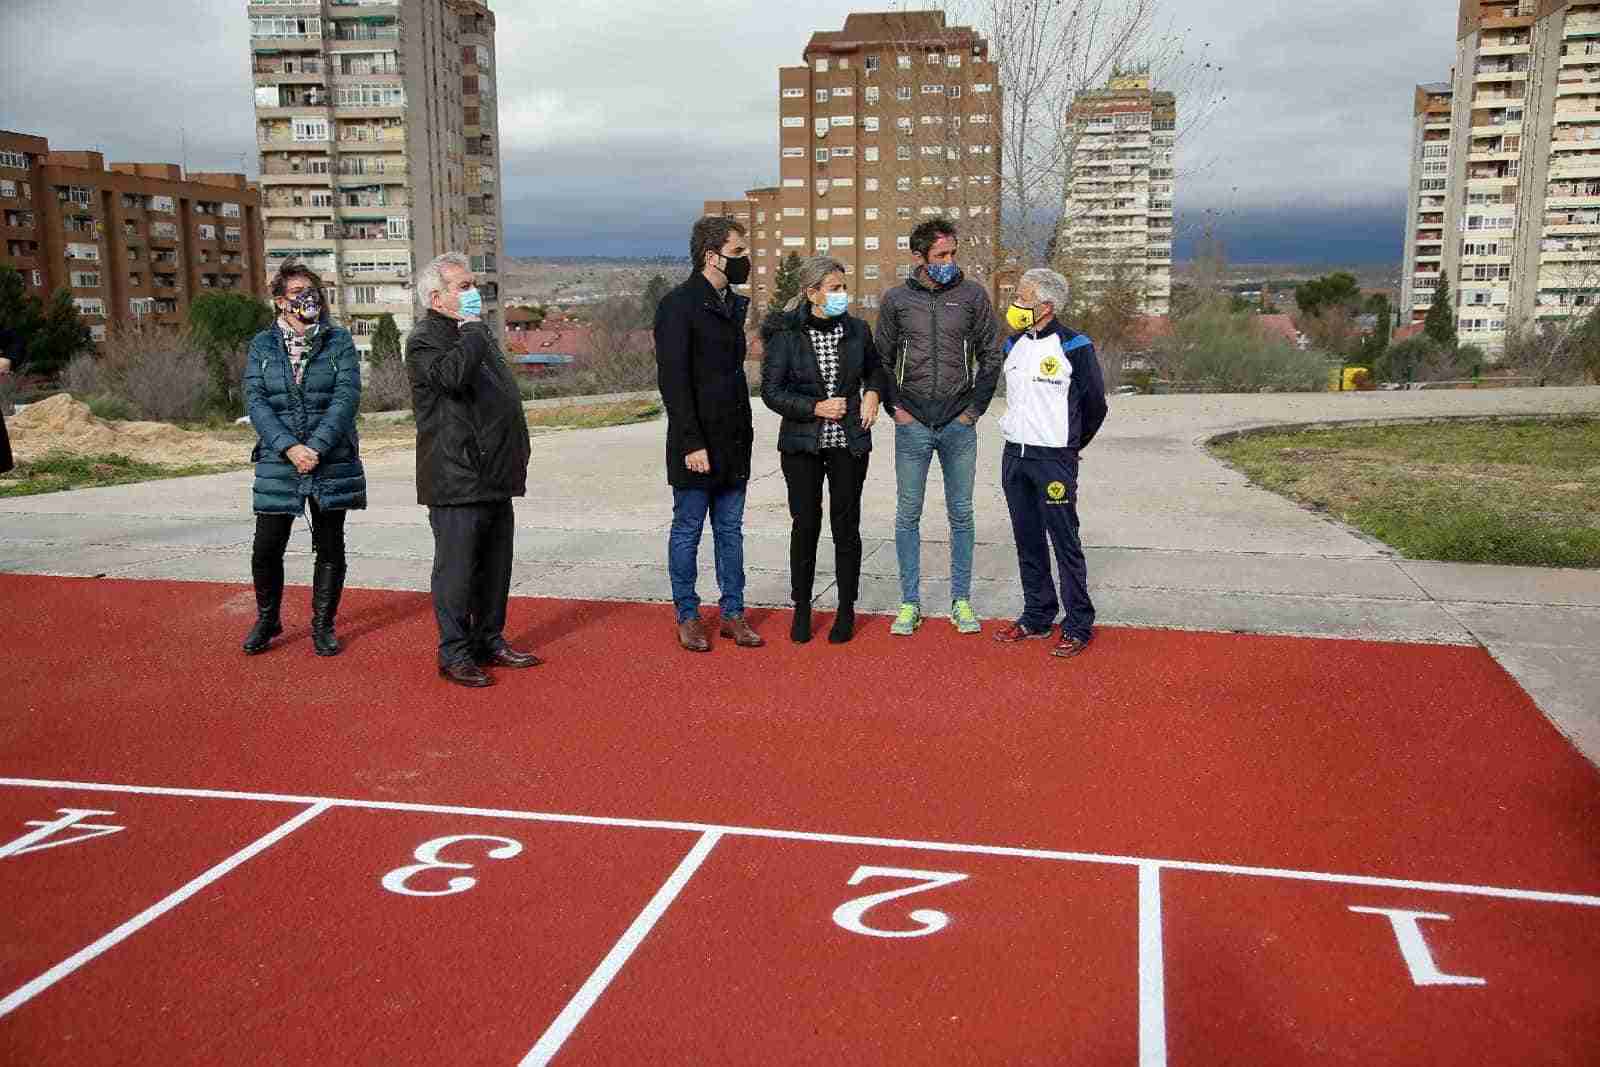 La alcaldesa visita una renovada pista de atletismo del Polígono, “piedra angular” del futuro complejo deportivo